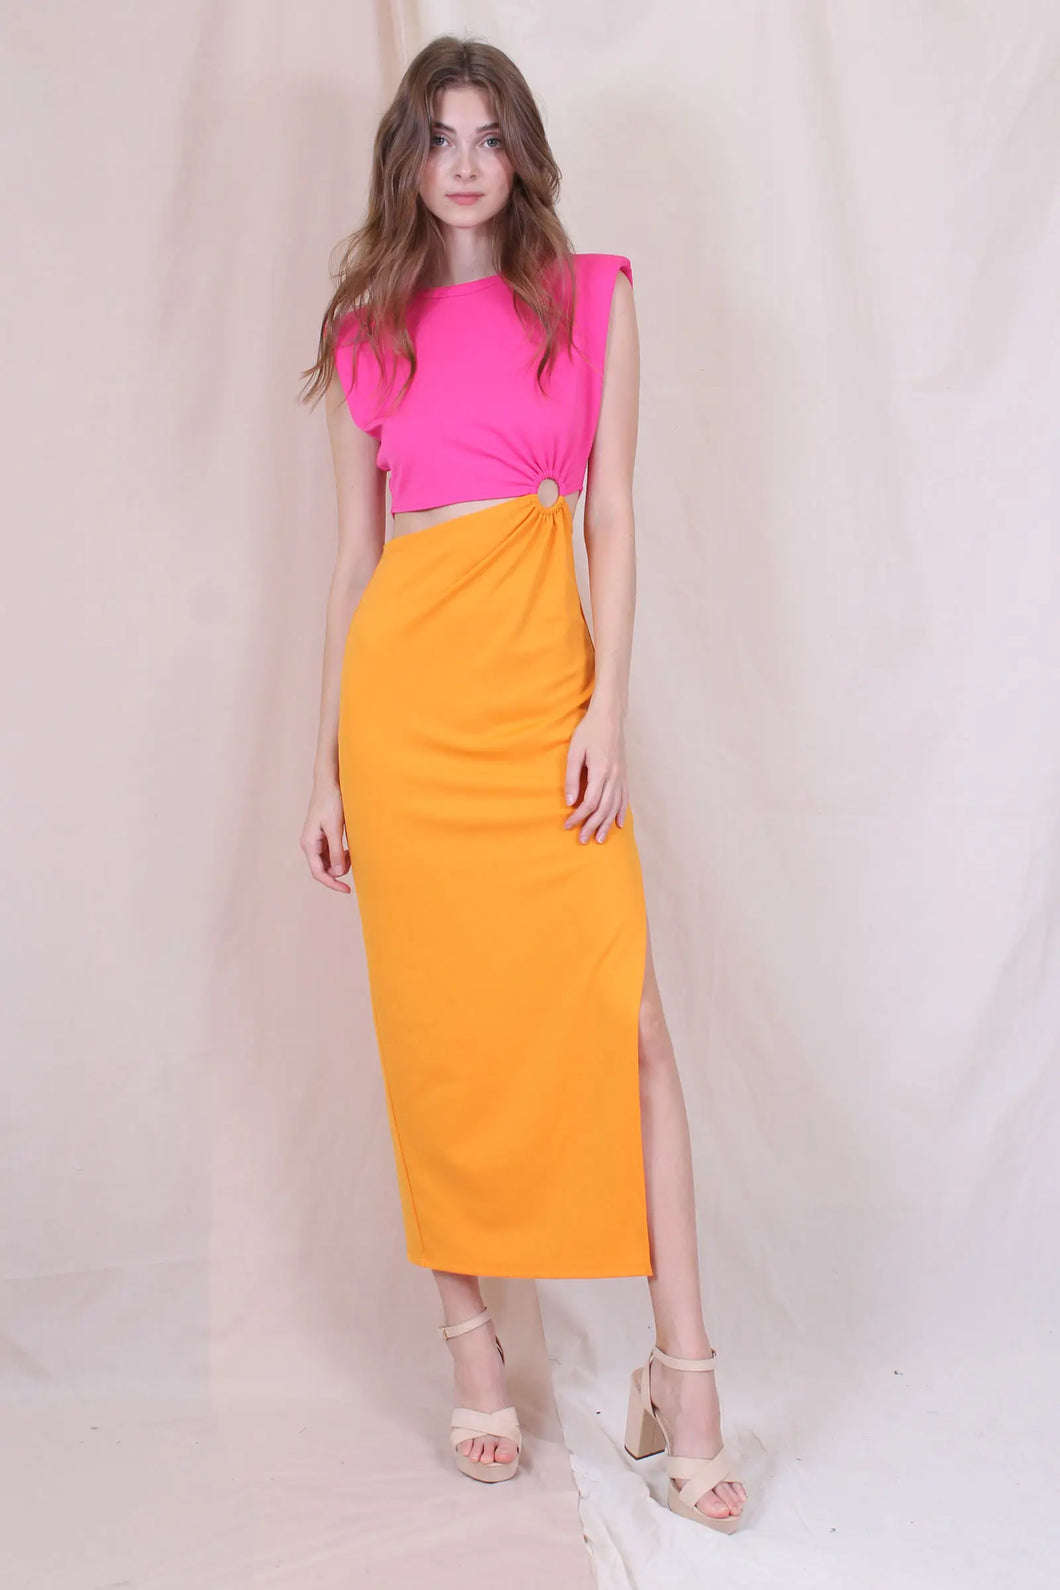 FINAL SALE, Color Block Cut Out Maxi Dress - Hot Pink/Apricot